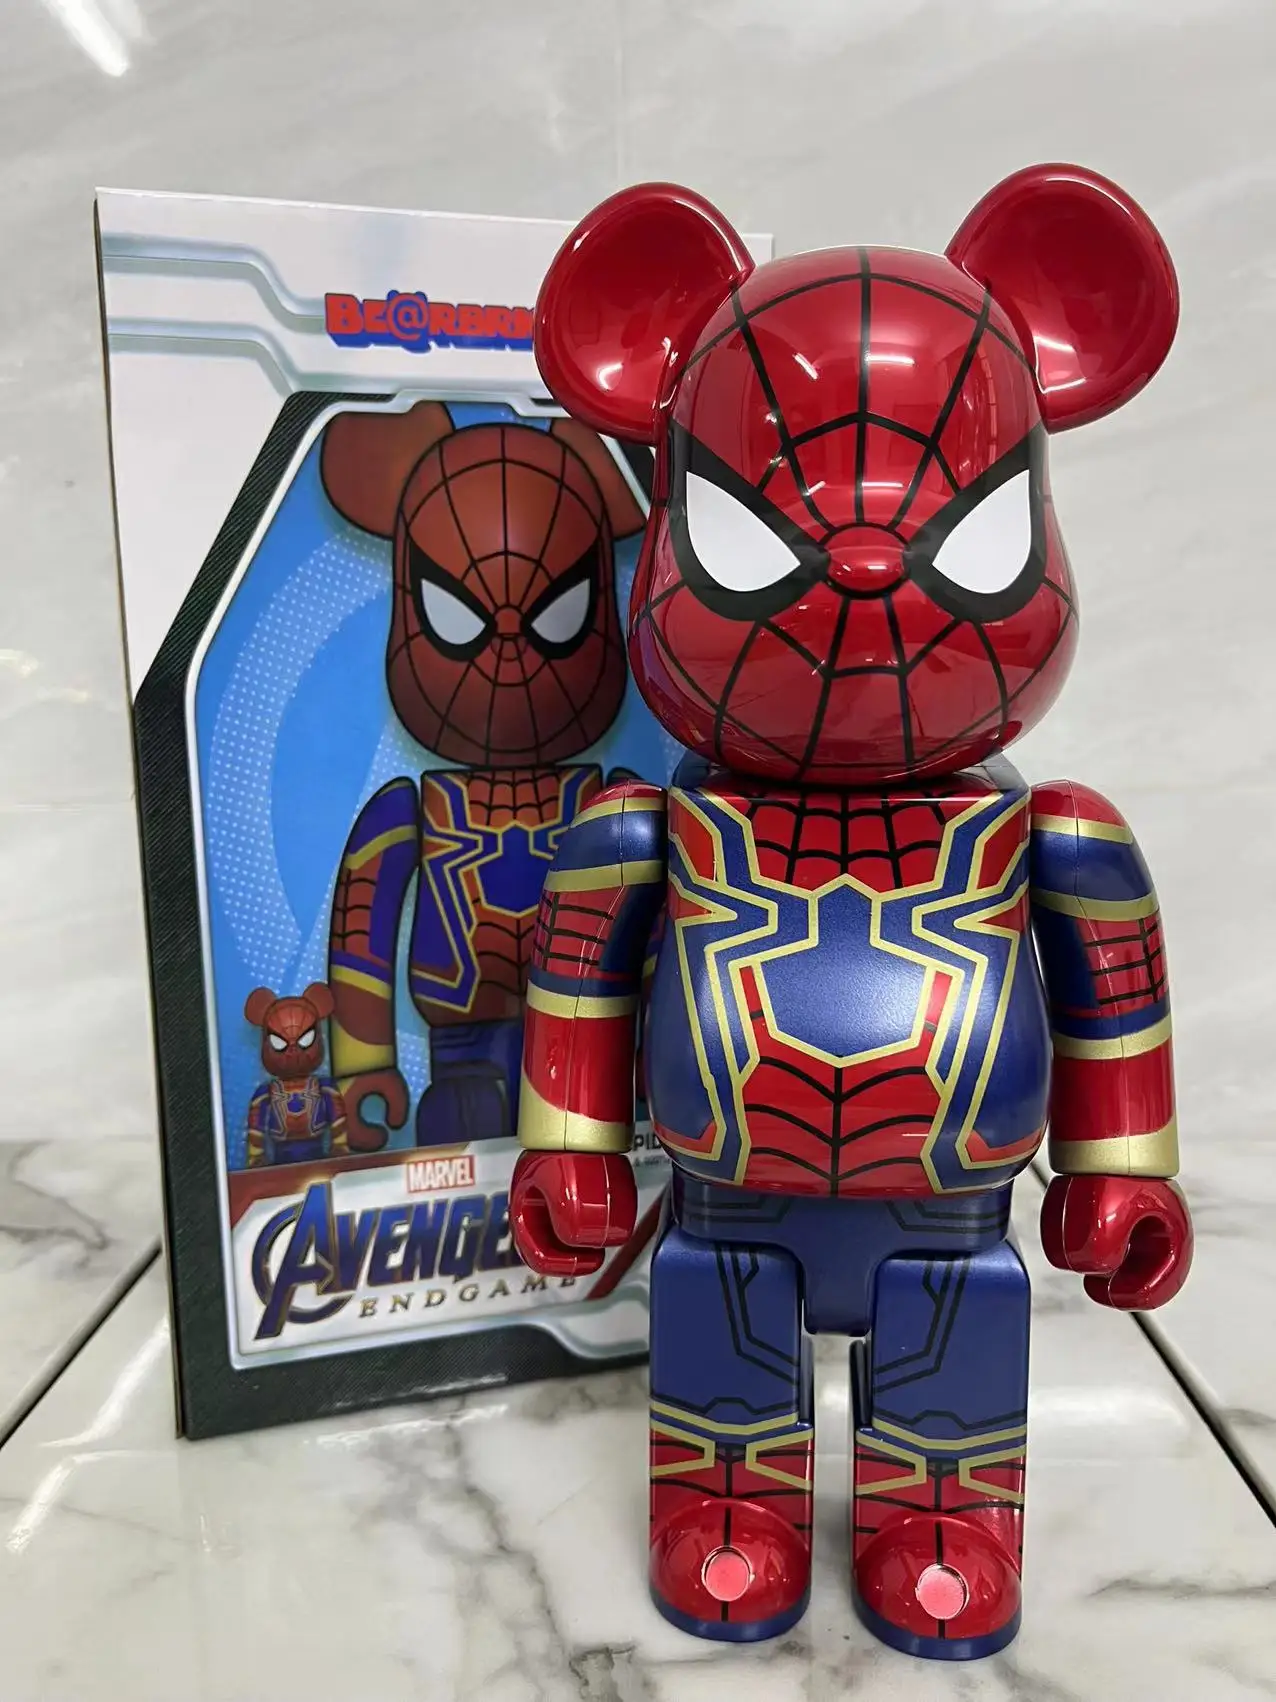 

Marvel 28 см медведь кирпич 400% Человек-паук искусственная кукла Железный человек экшн-Кукла Медведь кирпичная фигурка игрушка кавайное украшение